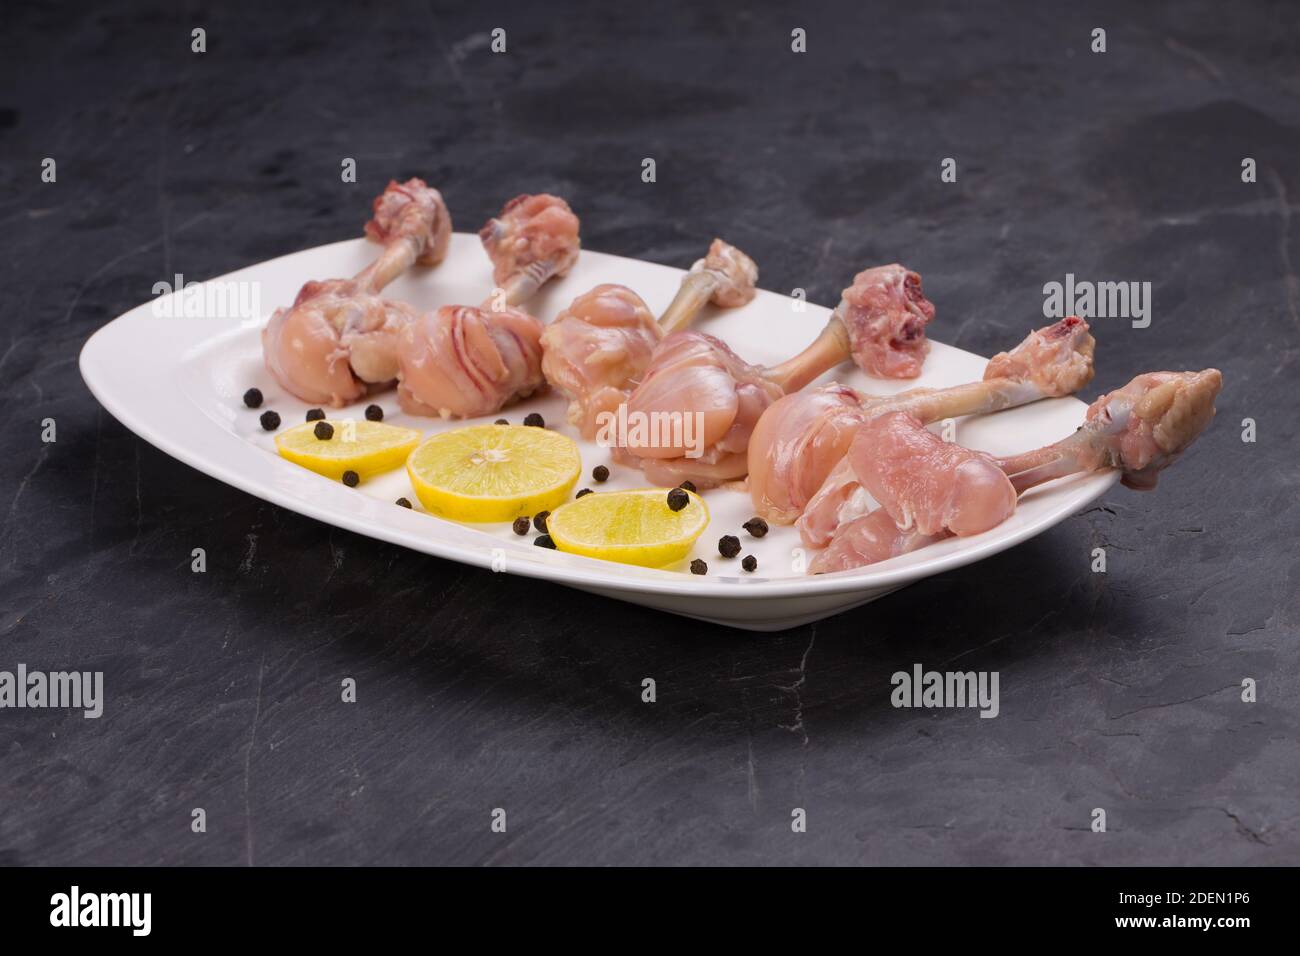 Rohes Huhn Lollipop, sechs Stücke Huhn Lollipop auf einem angeordnet Servierteller weiß und mit Zitronenscheiben und schwarz garniert Pfeffer auf grauer Textur Stockfoto